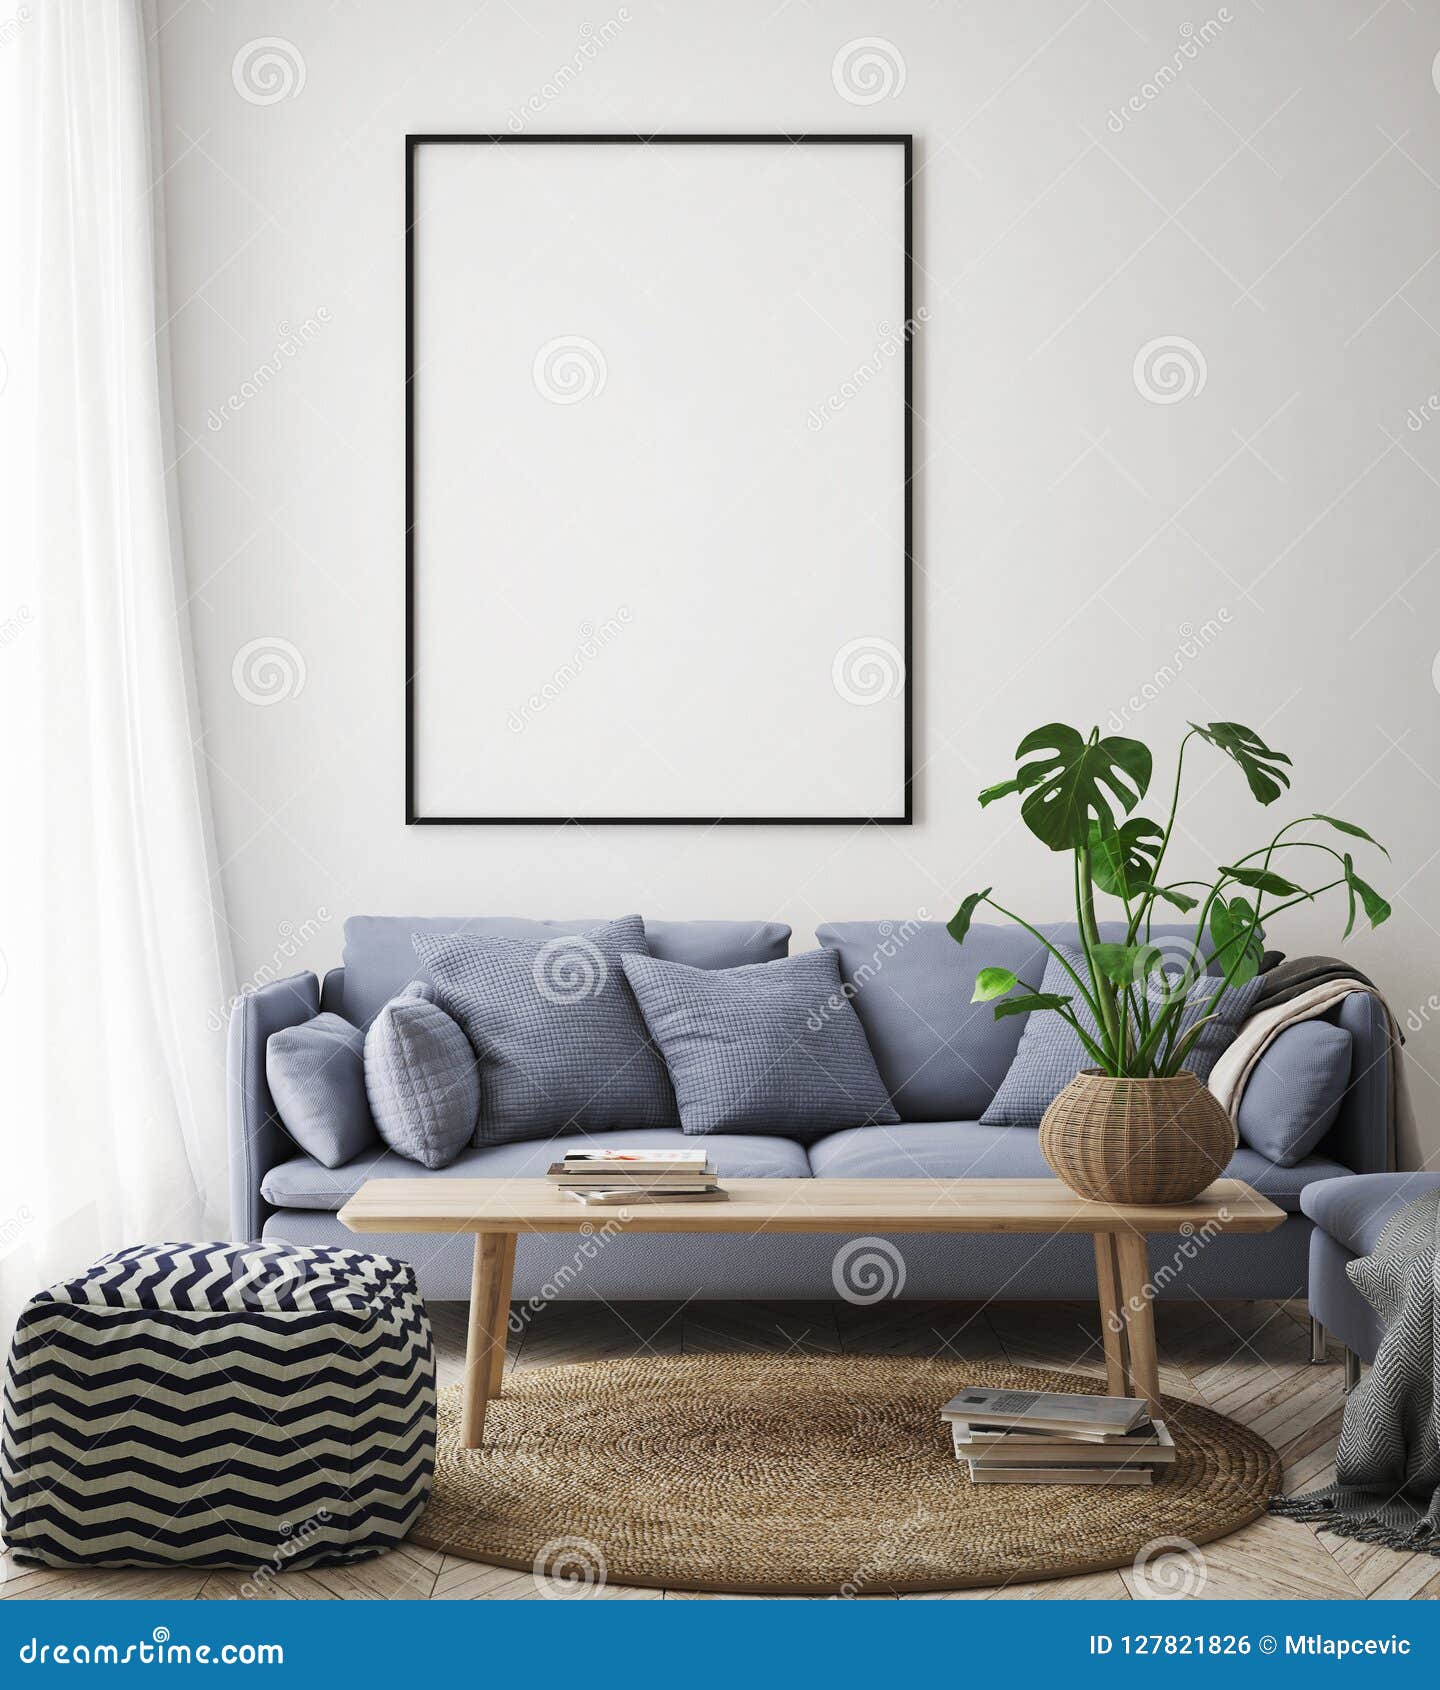 interior living background hipster poster render frame illustration mock scandinavian 3d